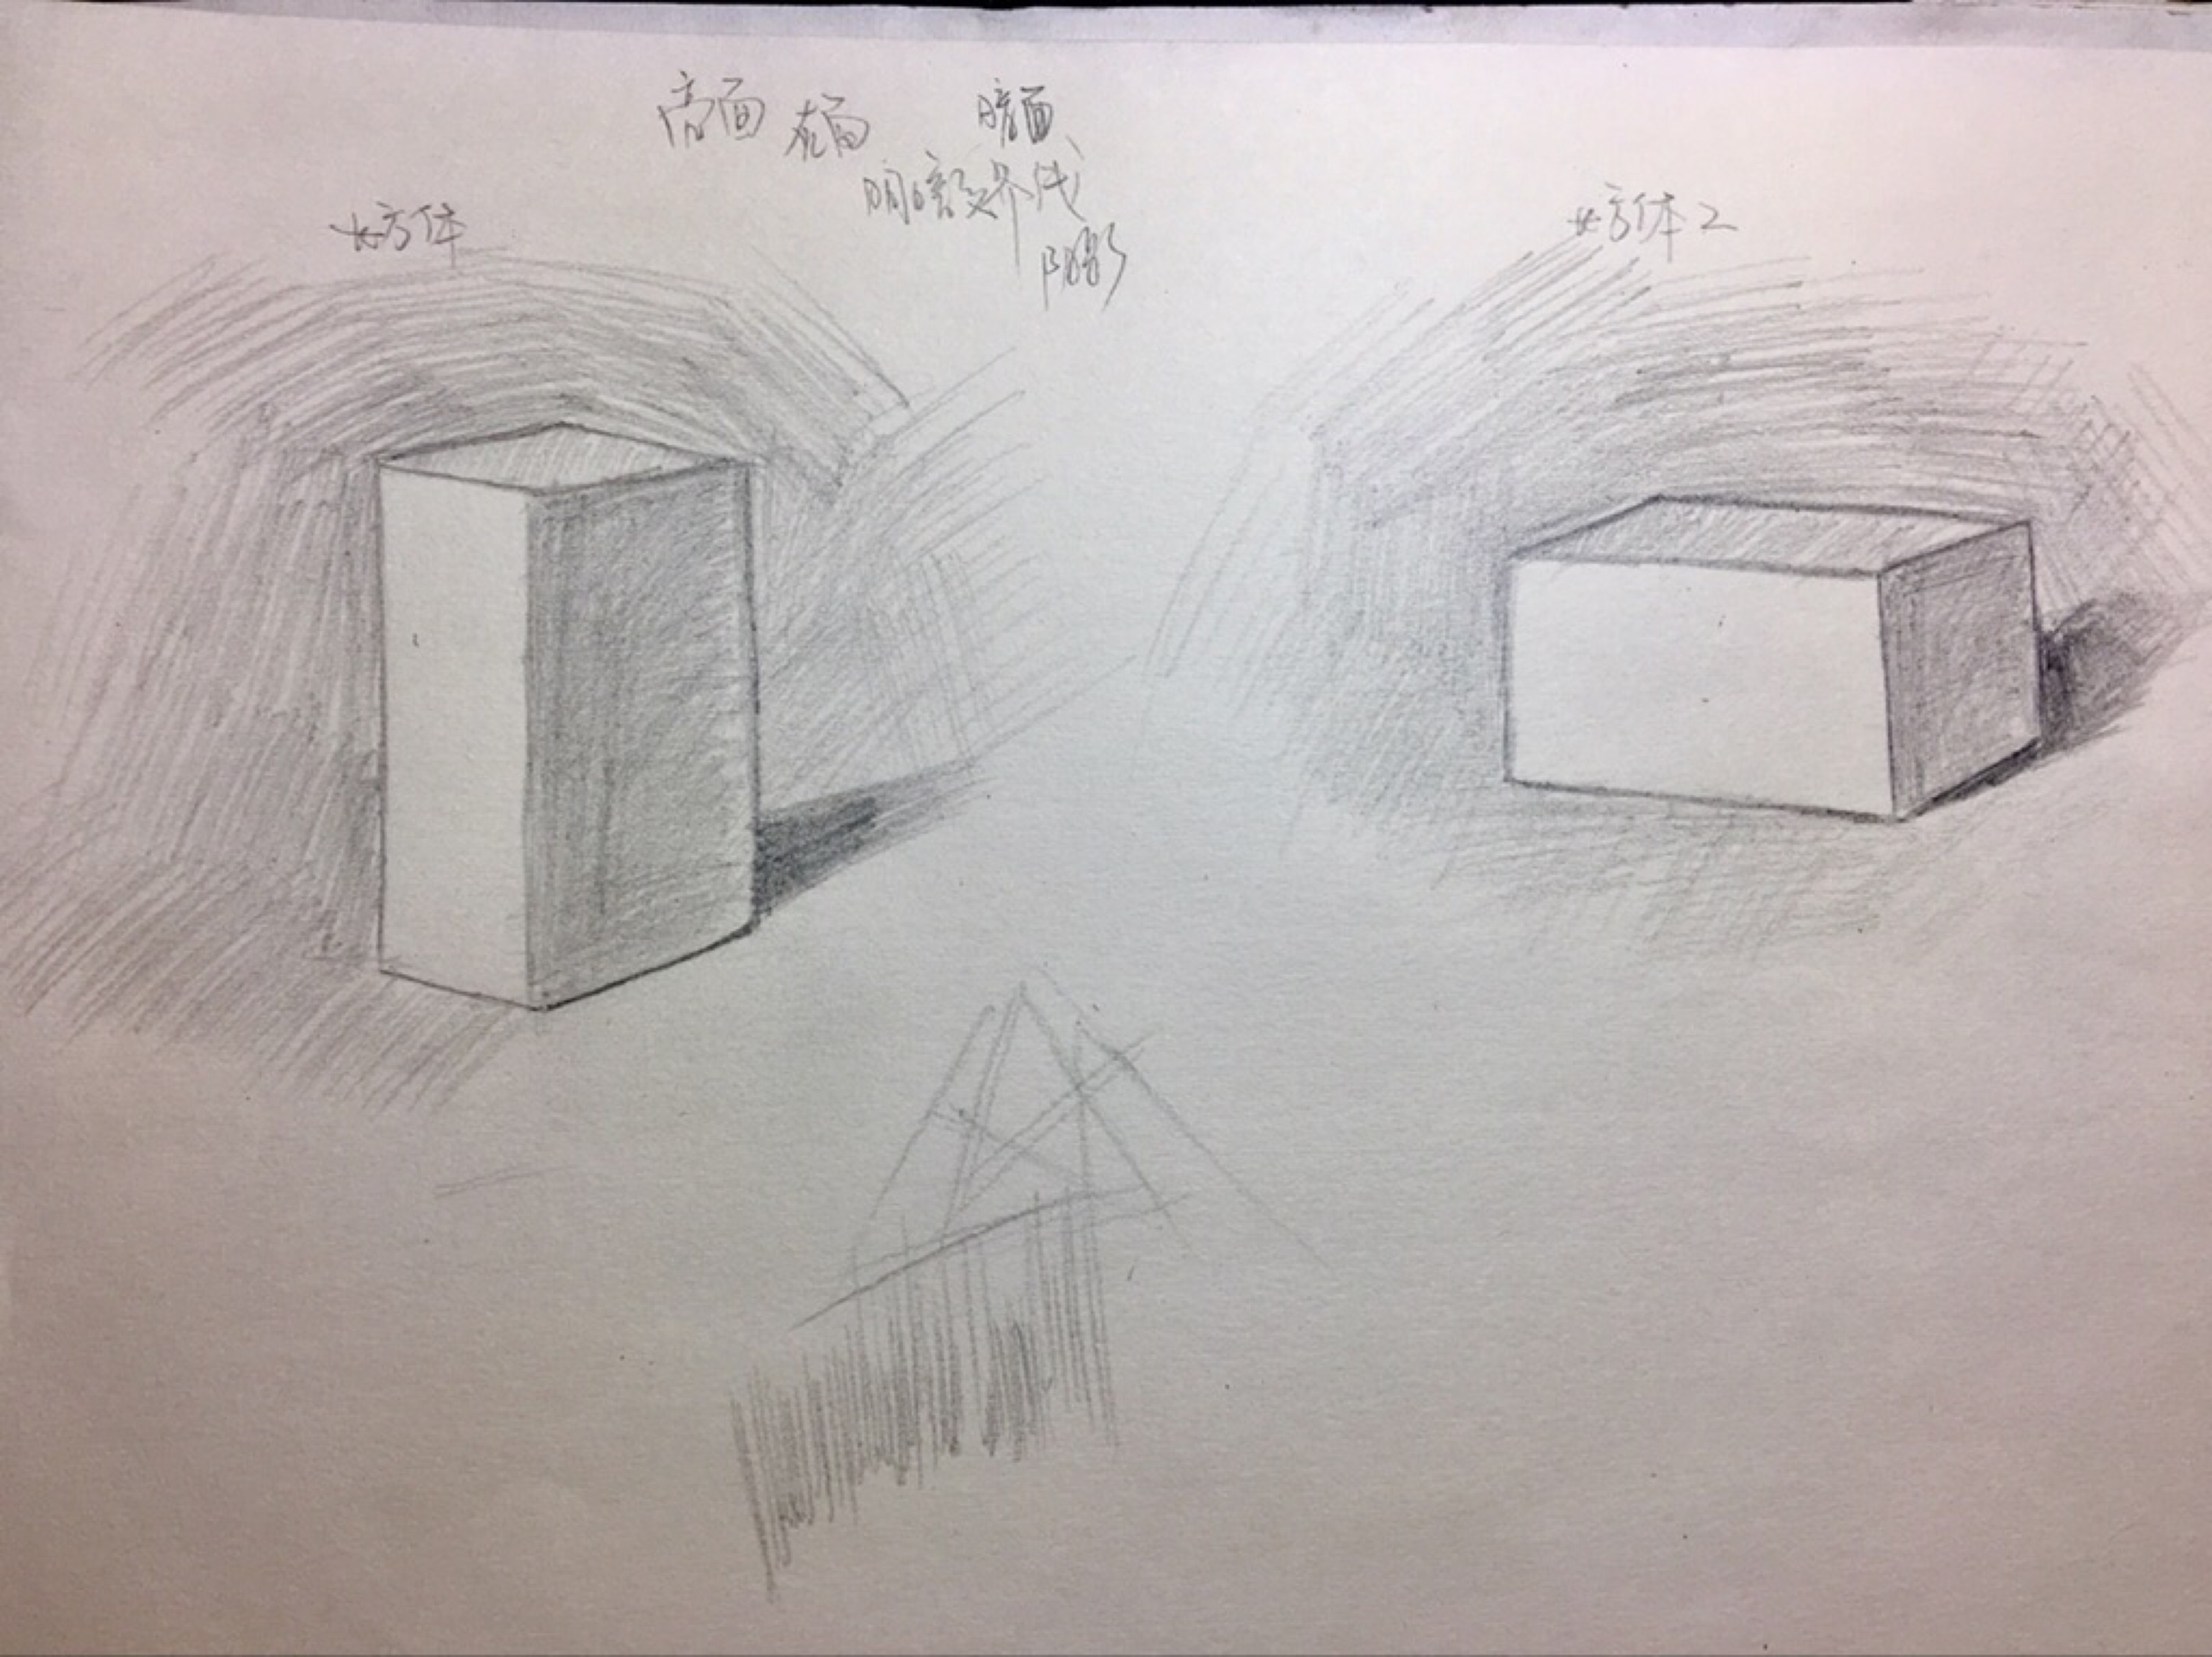 透视原理,平行透视,成角透视,画了正方体,四棱锥,长方体